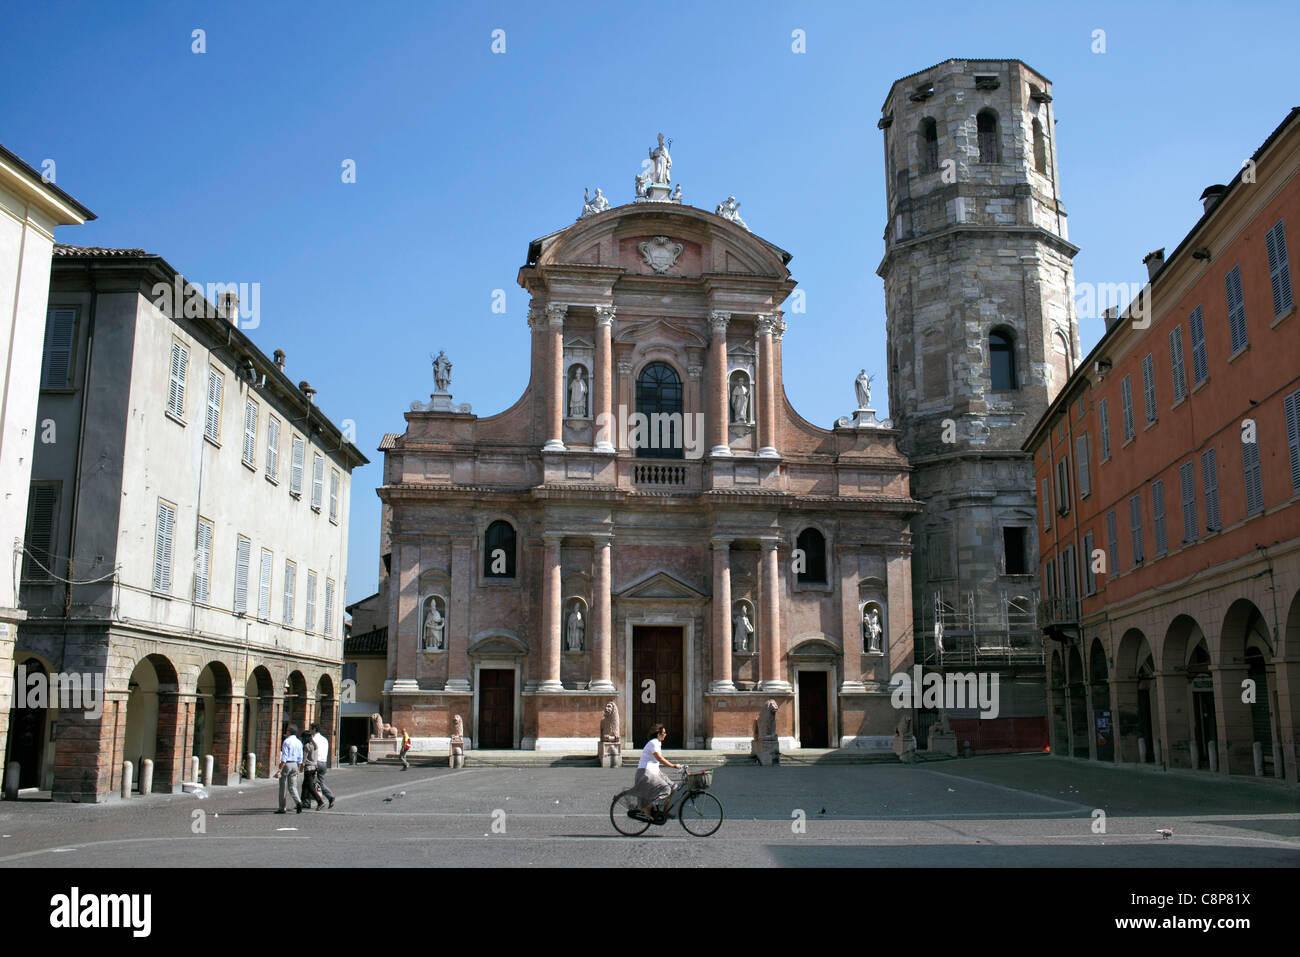 The Basilica di San Prospero in the Piazza San Prospero, Reggio Emilia, Italy. Stock Photo